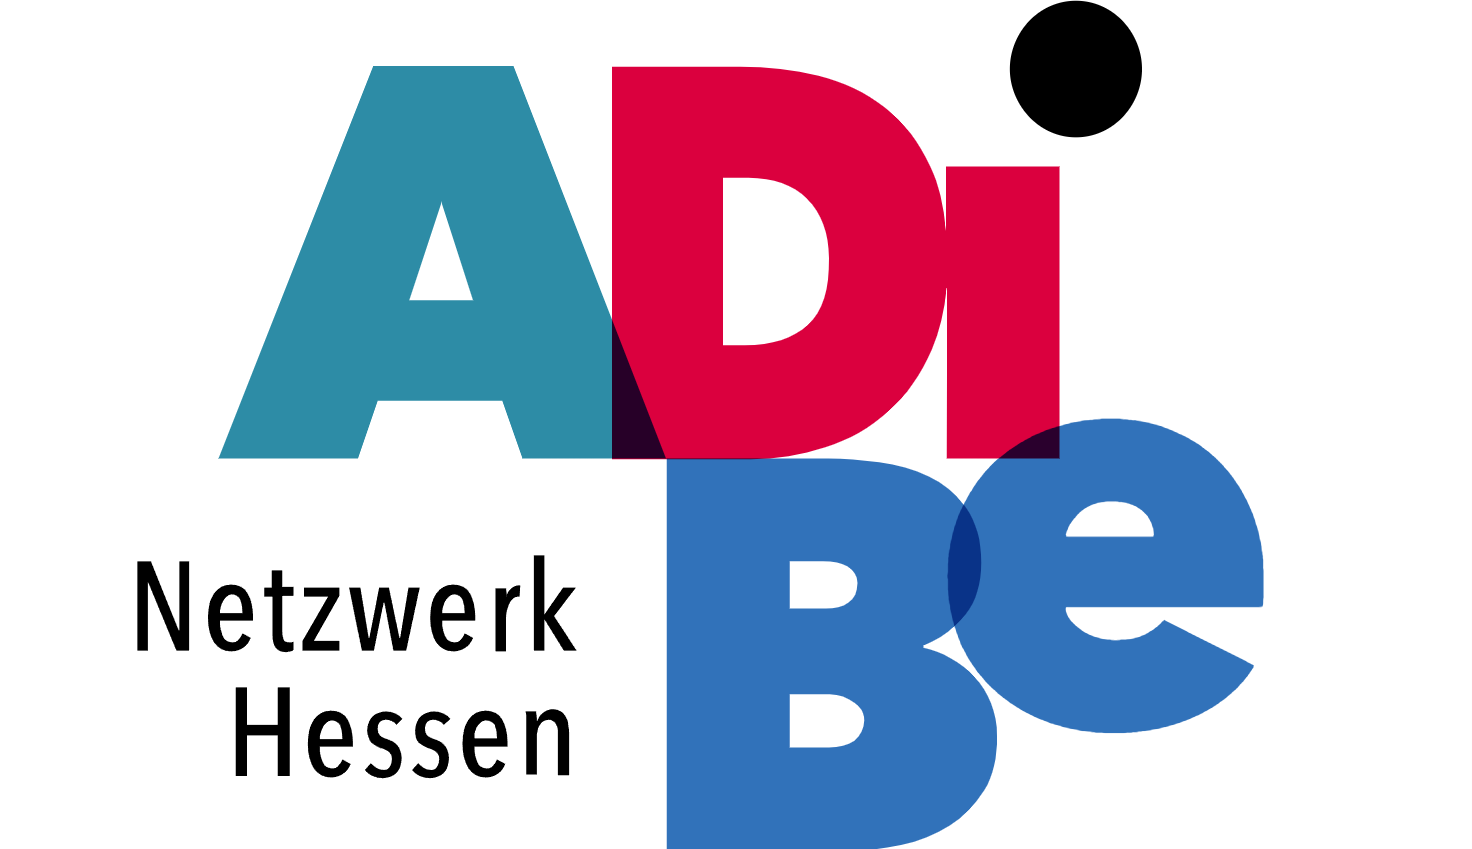 Logo des Antidiskriminierungsnetzwerk Hessen: Rechts in großen Buchstaben in blau und rot "ADiBe". Links unten steht in kleinerer, schwarzer Schrift "Netzwerk Hessen".